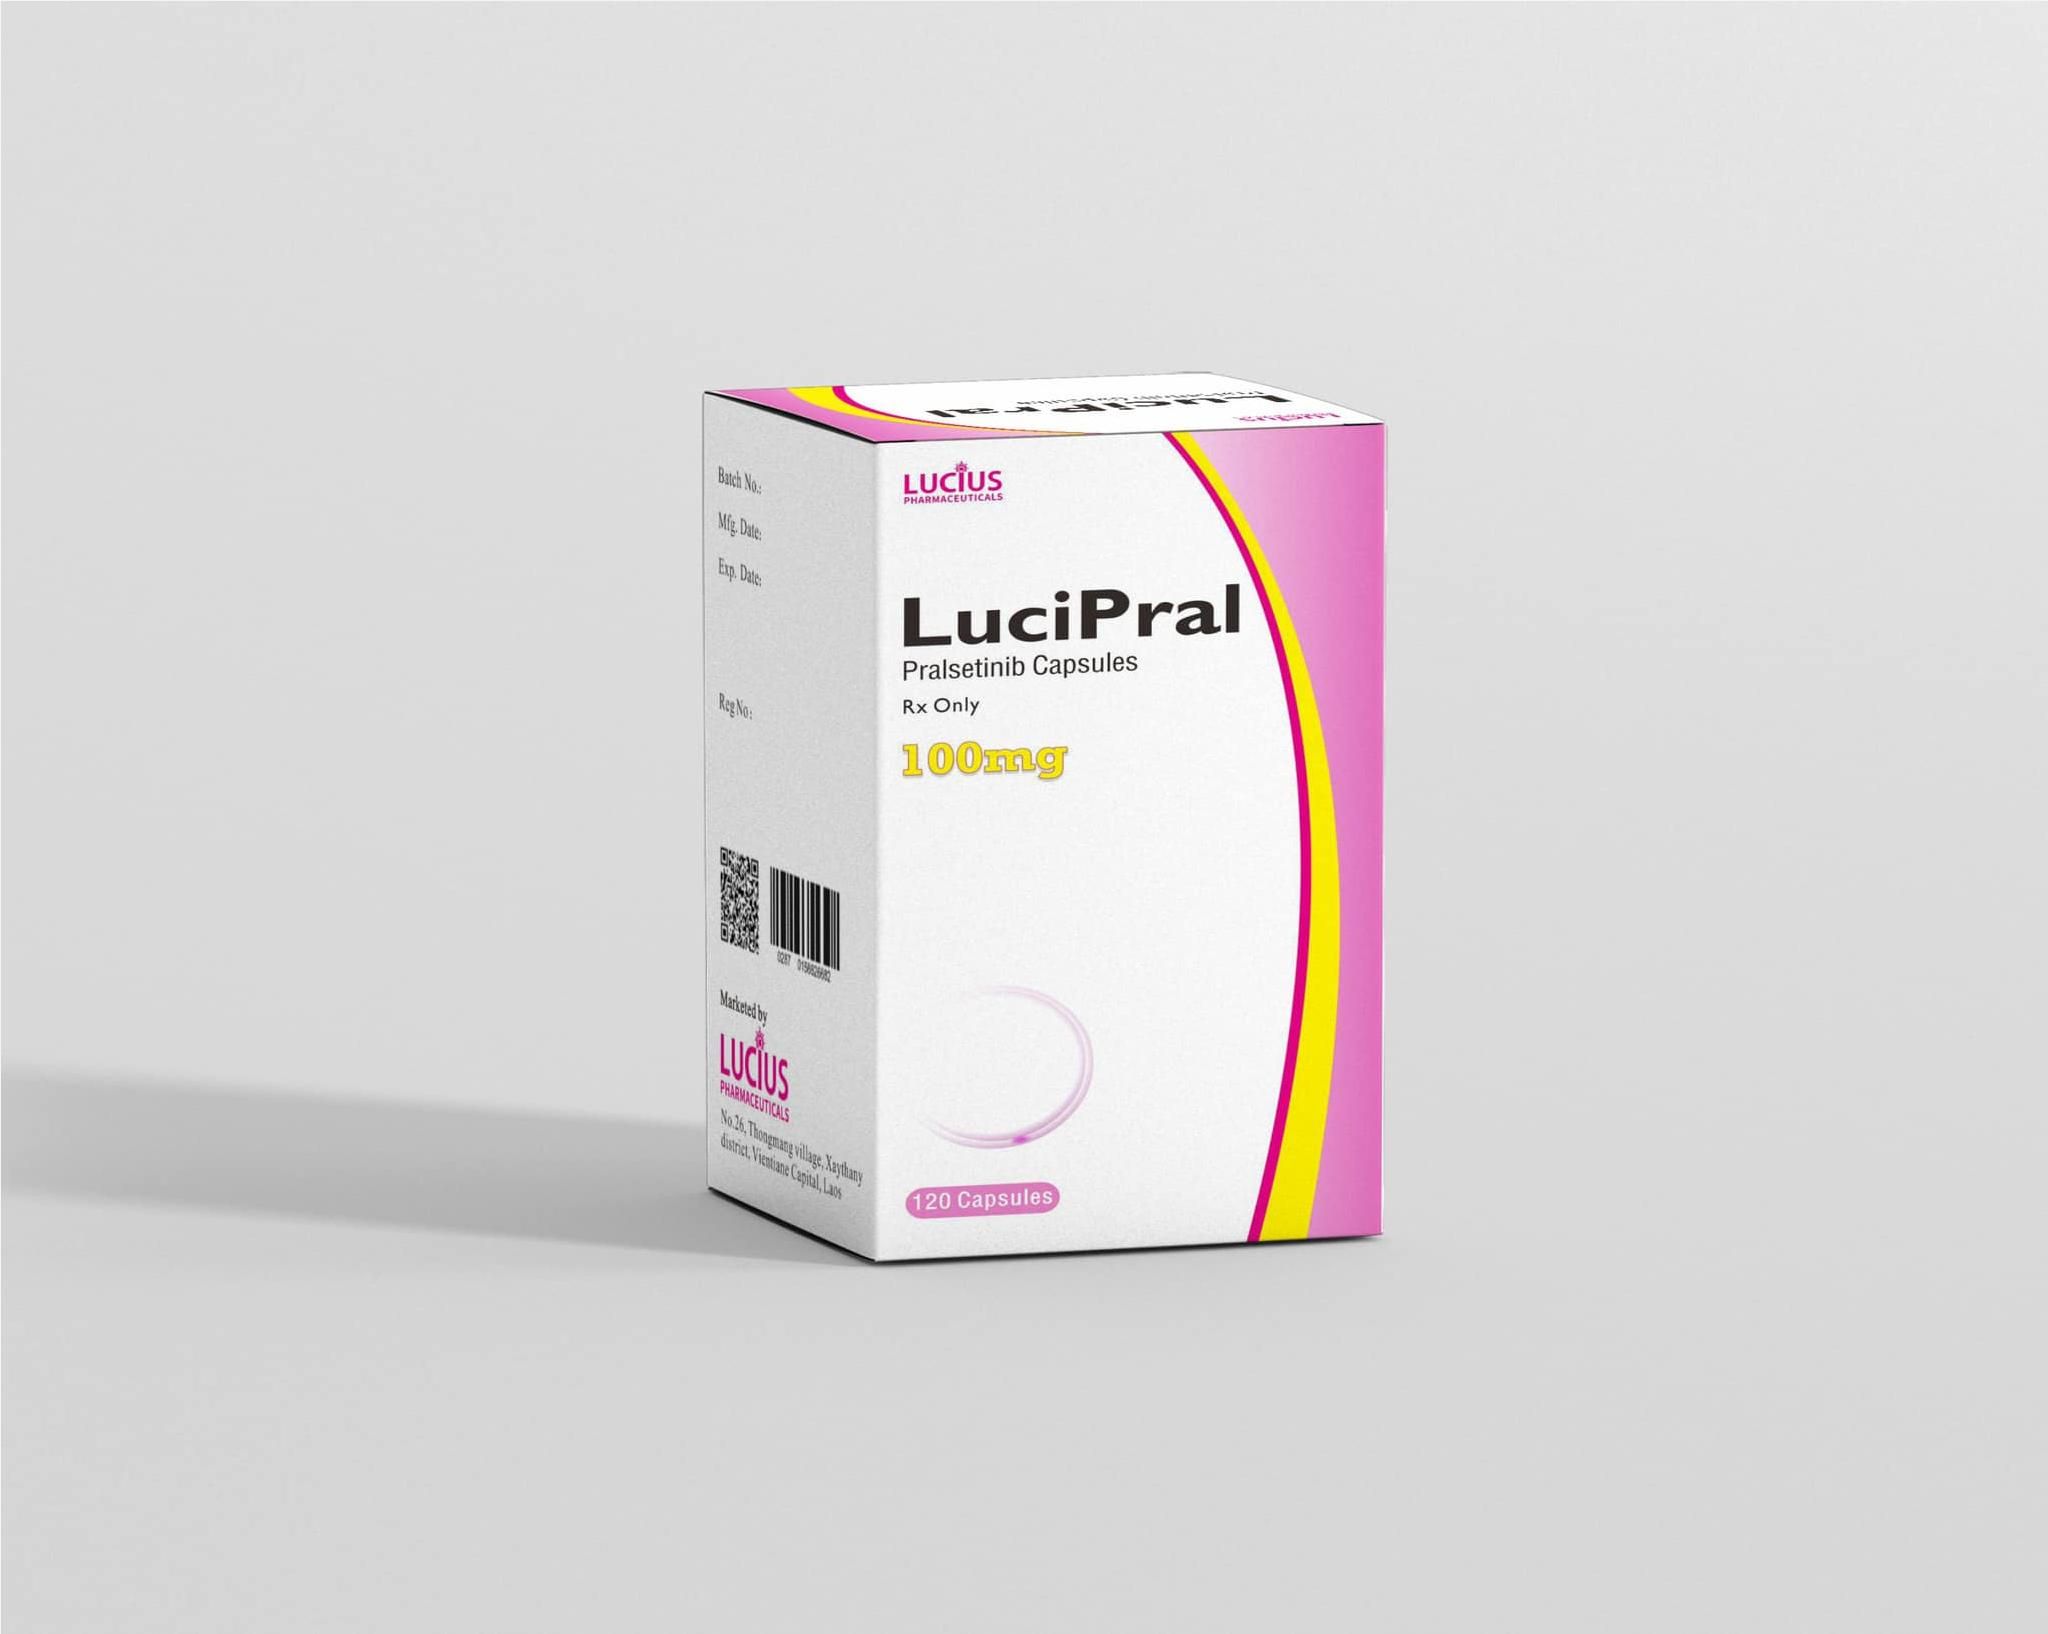 Thuốc LuciPral Pralsetinib 100mg giá bao nhiêu mua ở đâu?